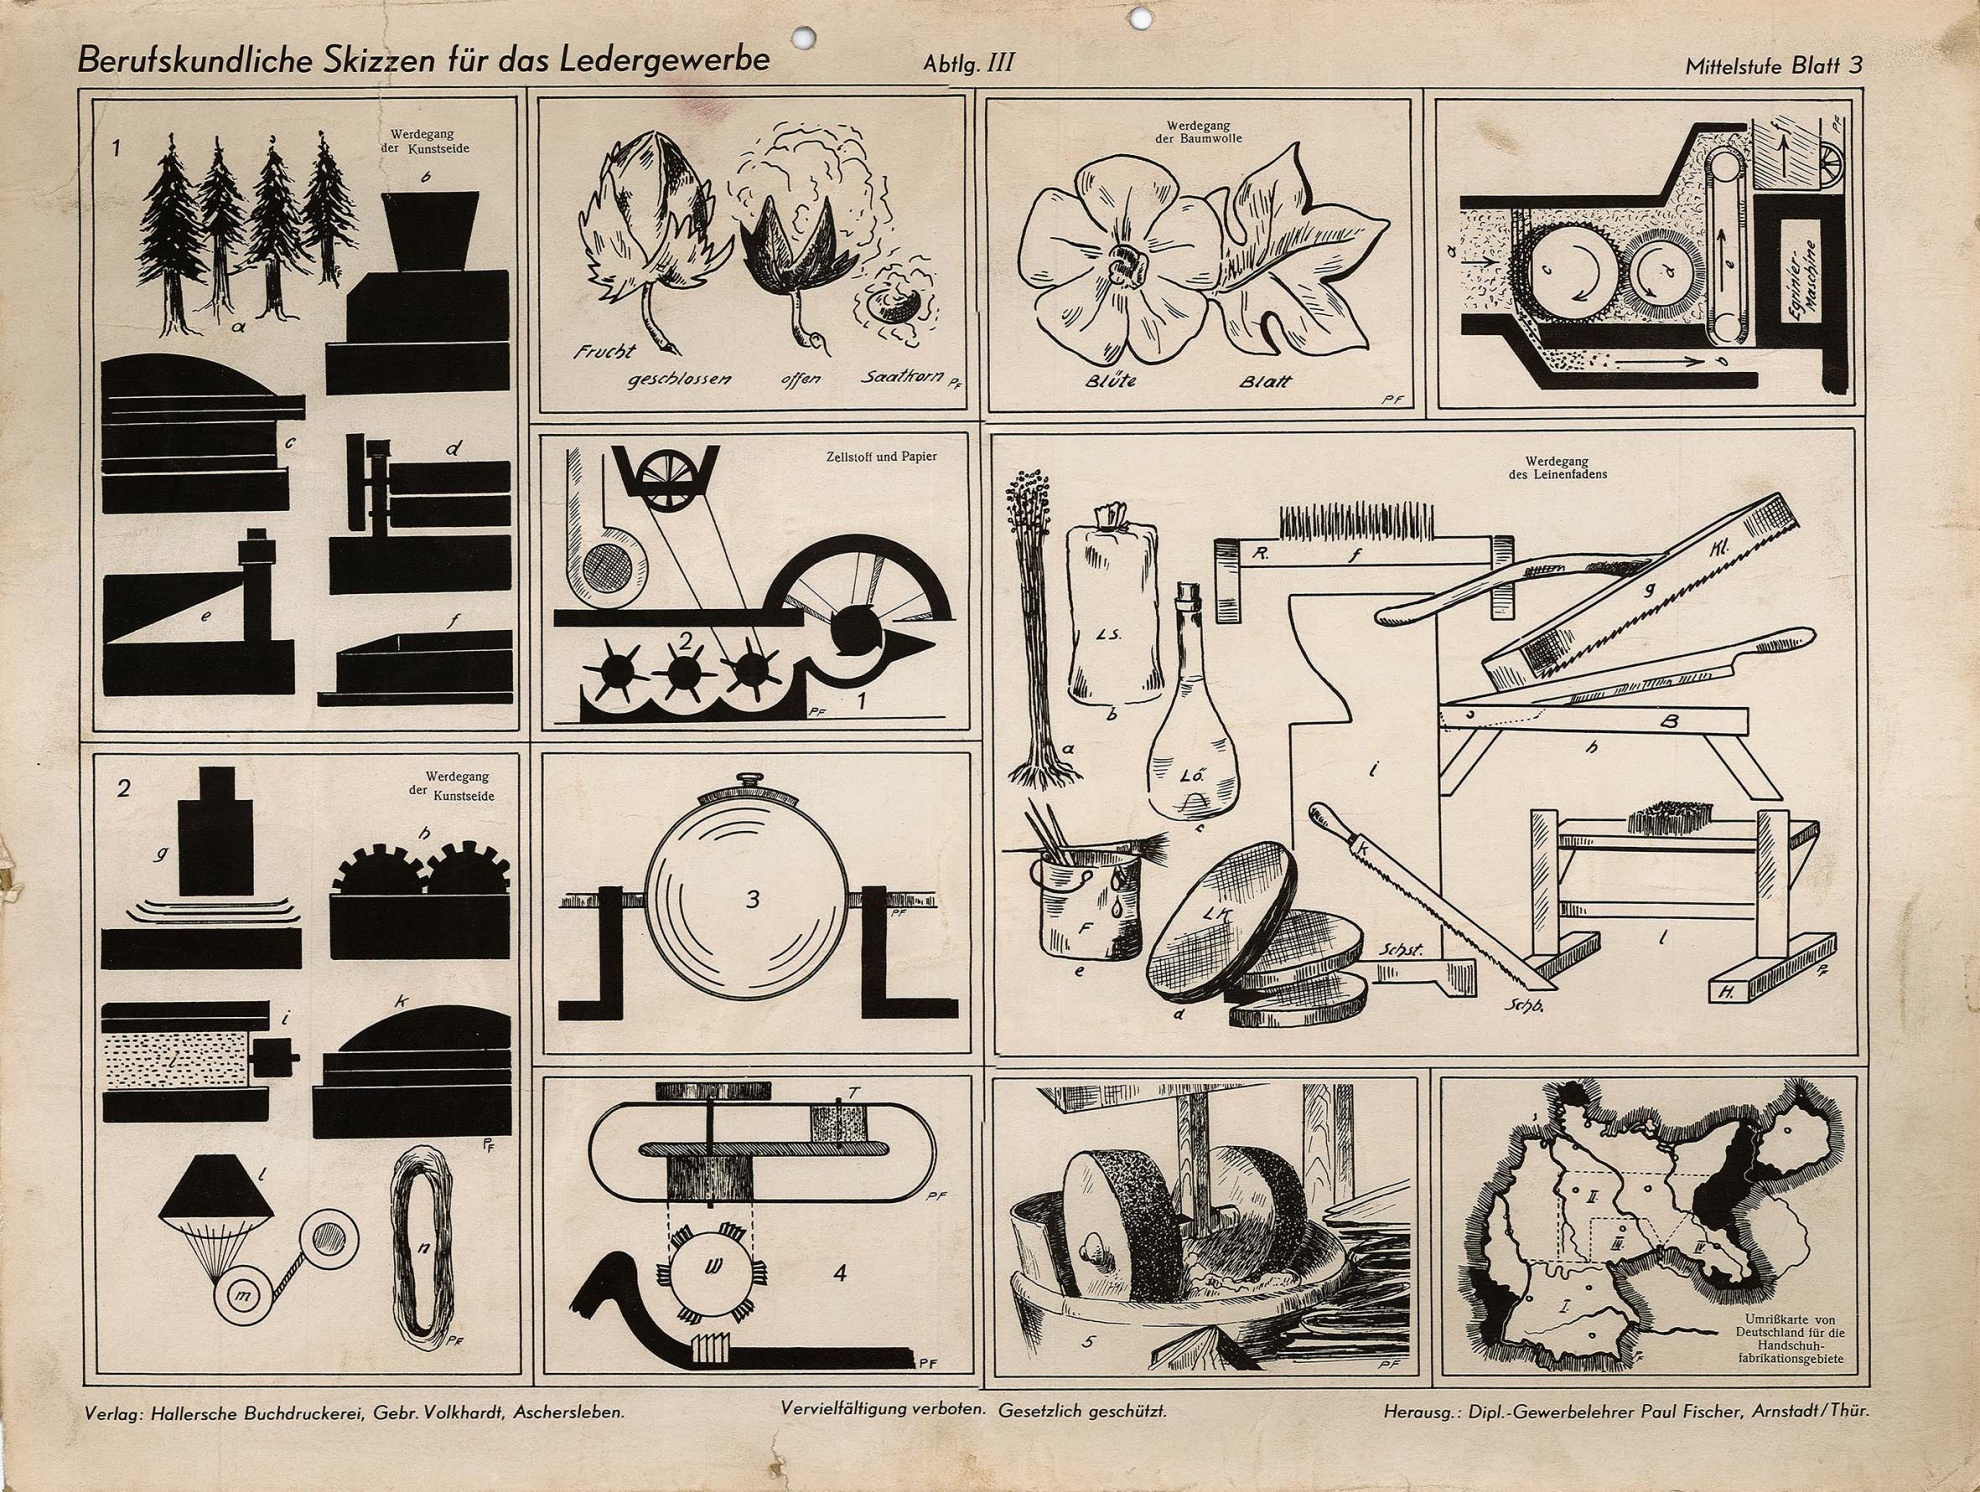 Berufskundliche Skizze für das Ledergewerbe - Mittelstufe Blatt 3 (Museum Wolmirstedt RR-F)